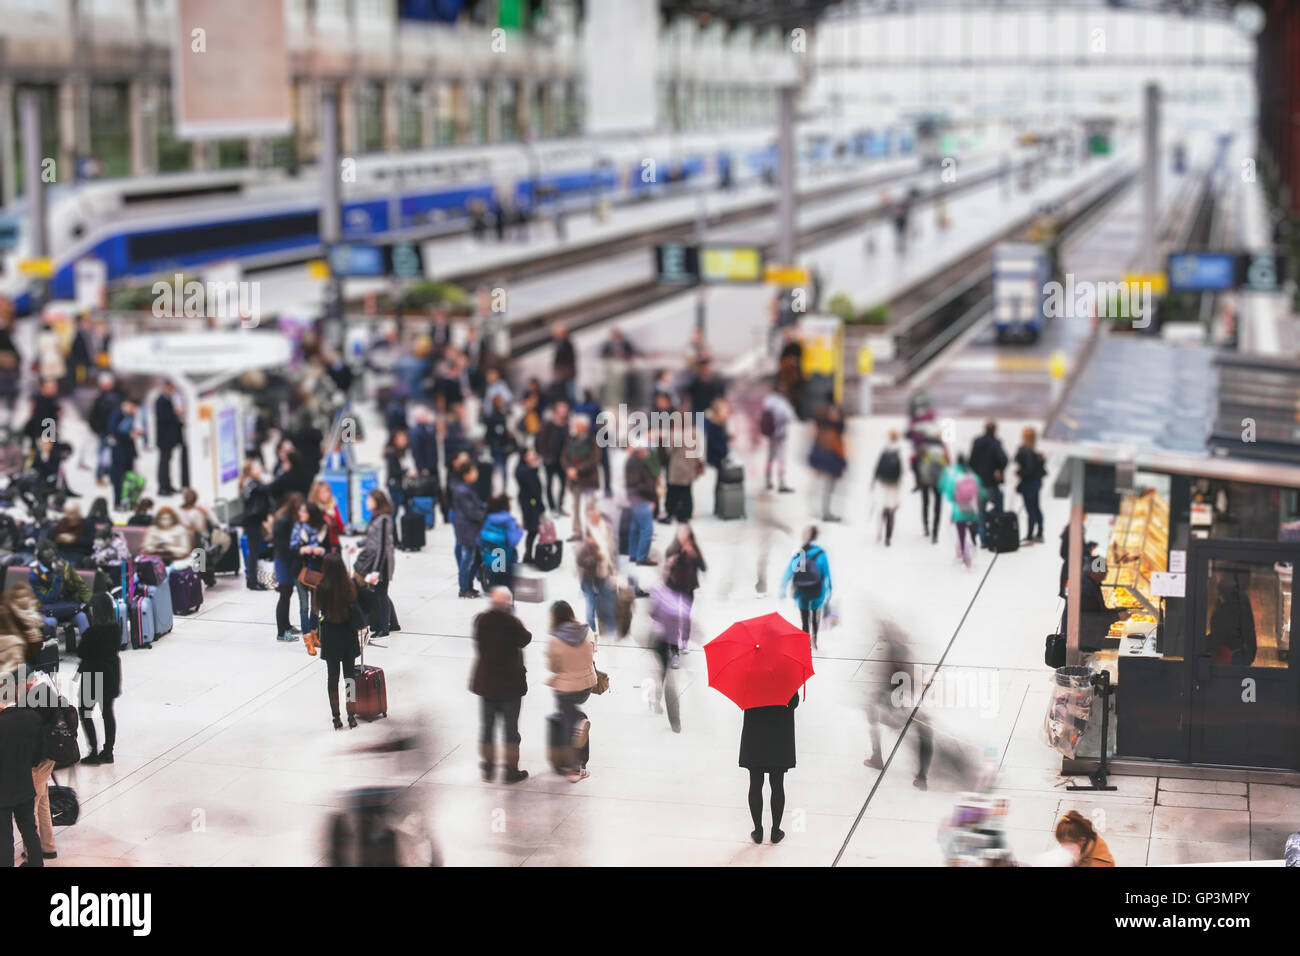 Donna con ombrello rosso in attesa alla stazione ferroviaria e sfocata persone in movimento, solitudine concept Foto Stock